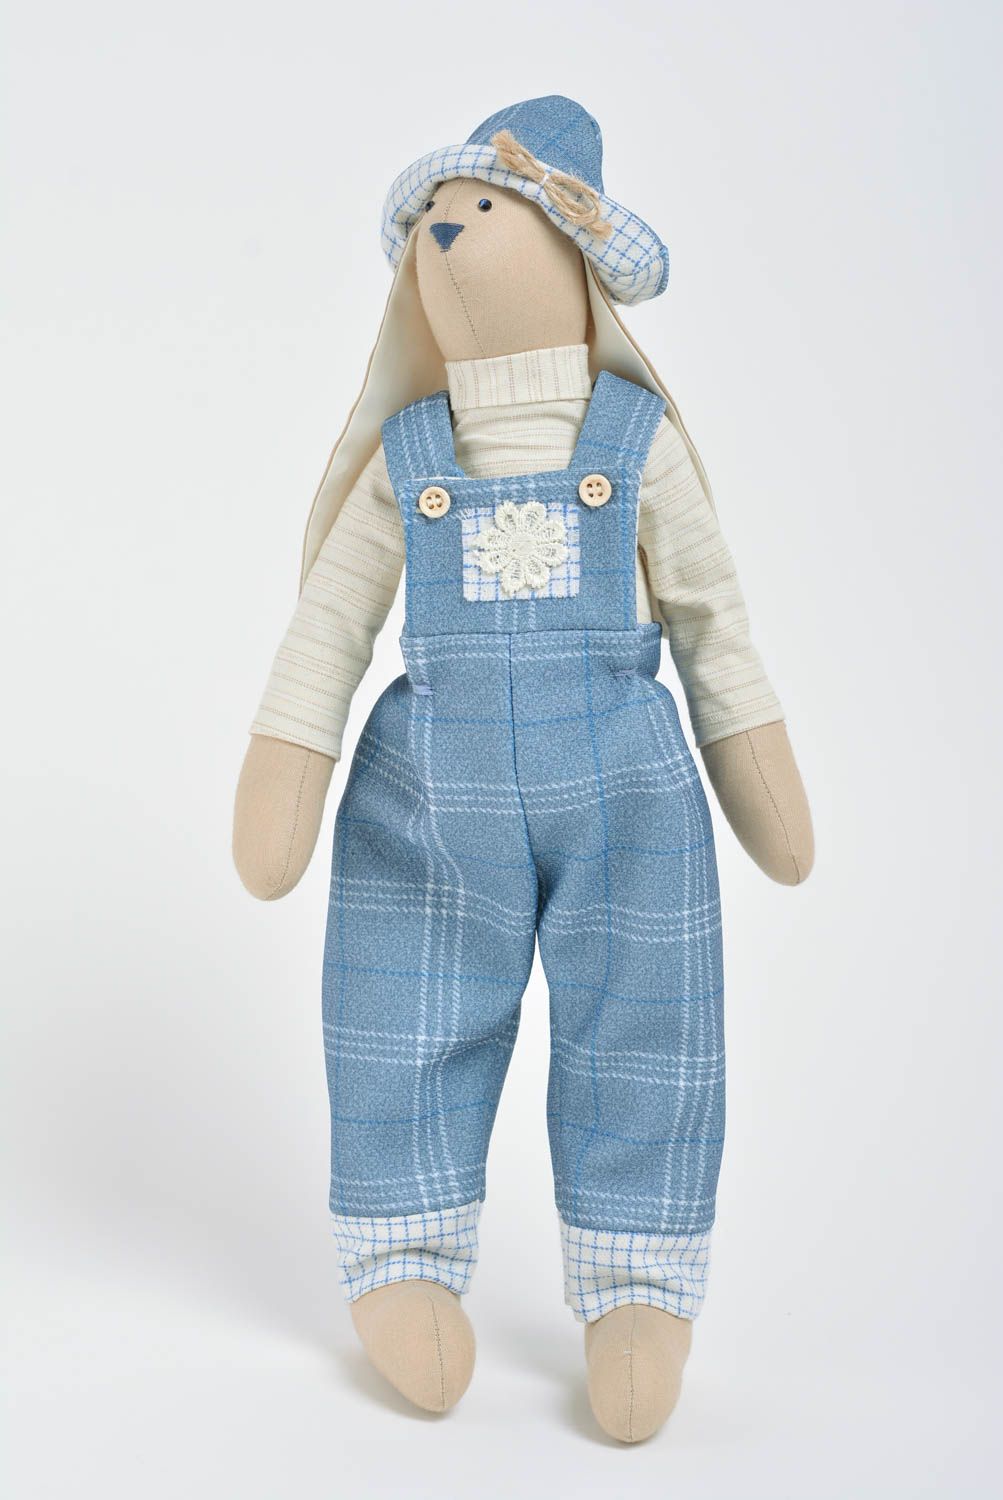 Авторская кукла зайчик из ткани ручной работы для интерьера дома красивая фото 1